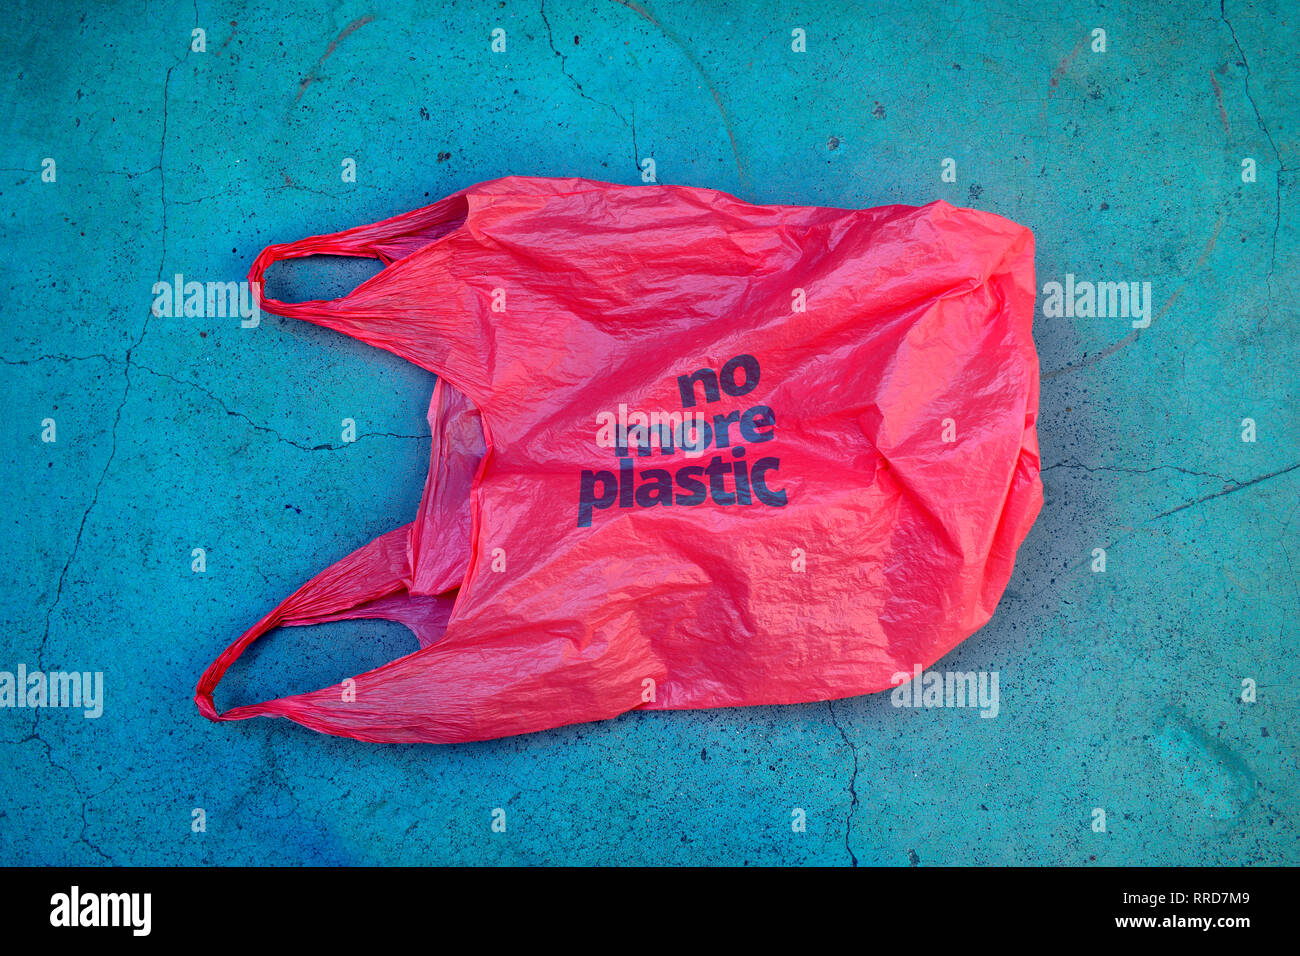 Pas de plastique. La prise de conscience environnementale vindication shot. Il montre un sac poubelle en plastique rouge avec devise pas plus de plastique. Banque D'Images